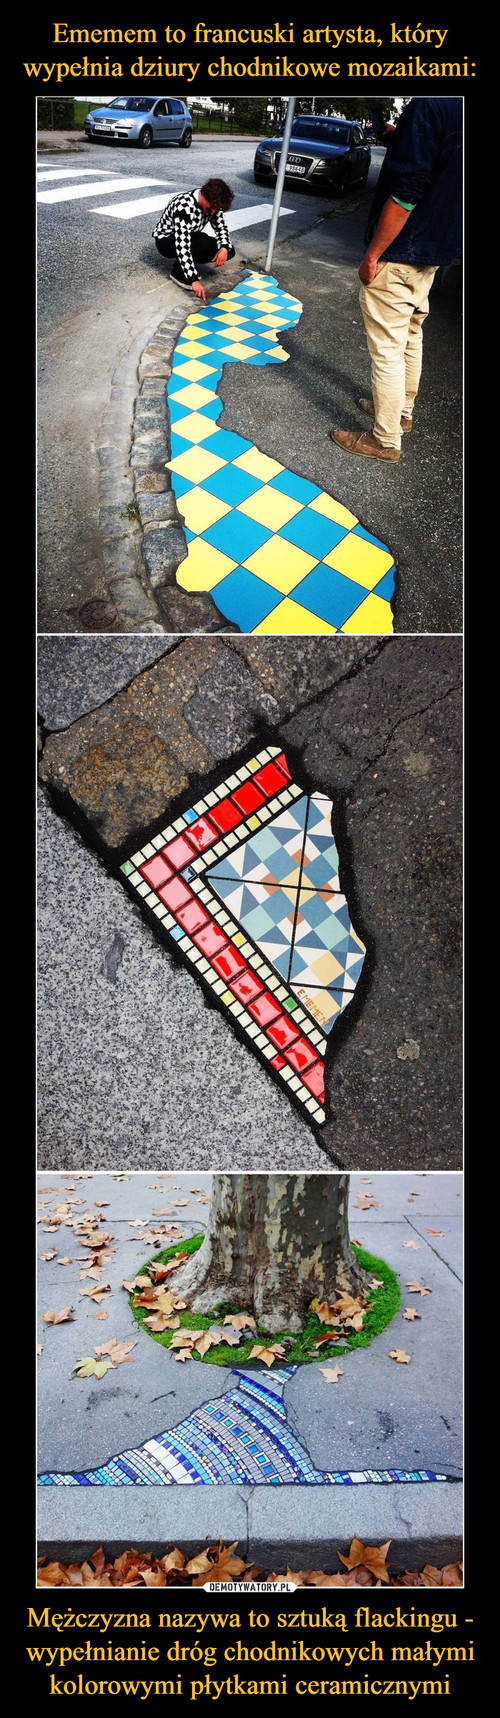 Ememem to francuski artysta, który wypełnia dziury chodnikowe mozaikami: Mężczyzna nazywa to sztuką flackingu - wypełnianie dróg chodnikowych małymi kolorowymi płytkami ceramicznymi